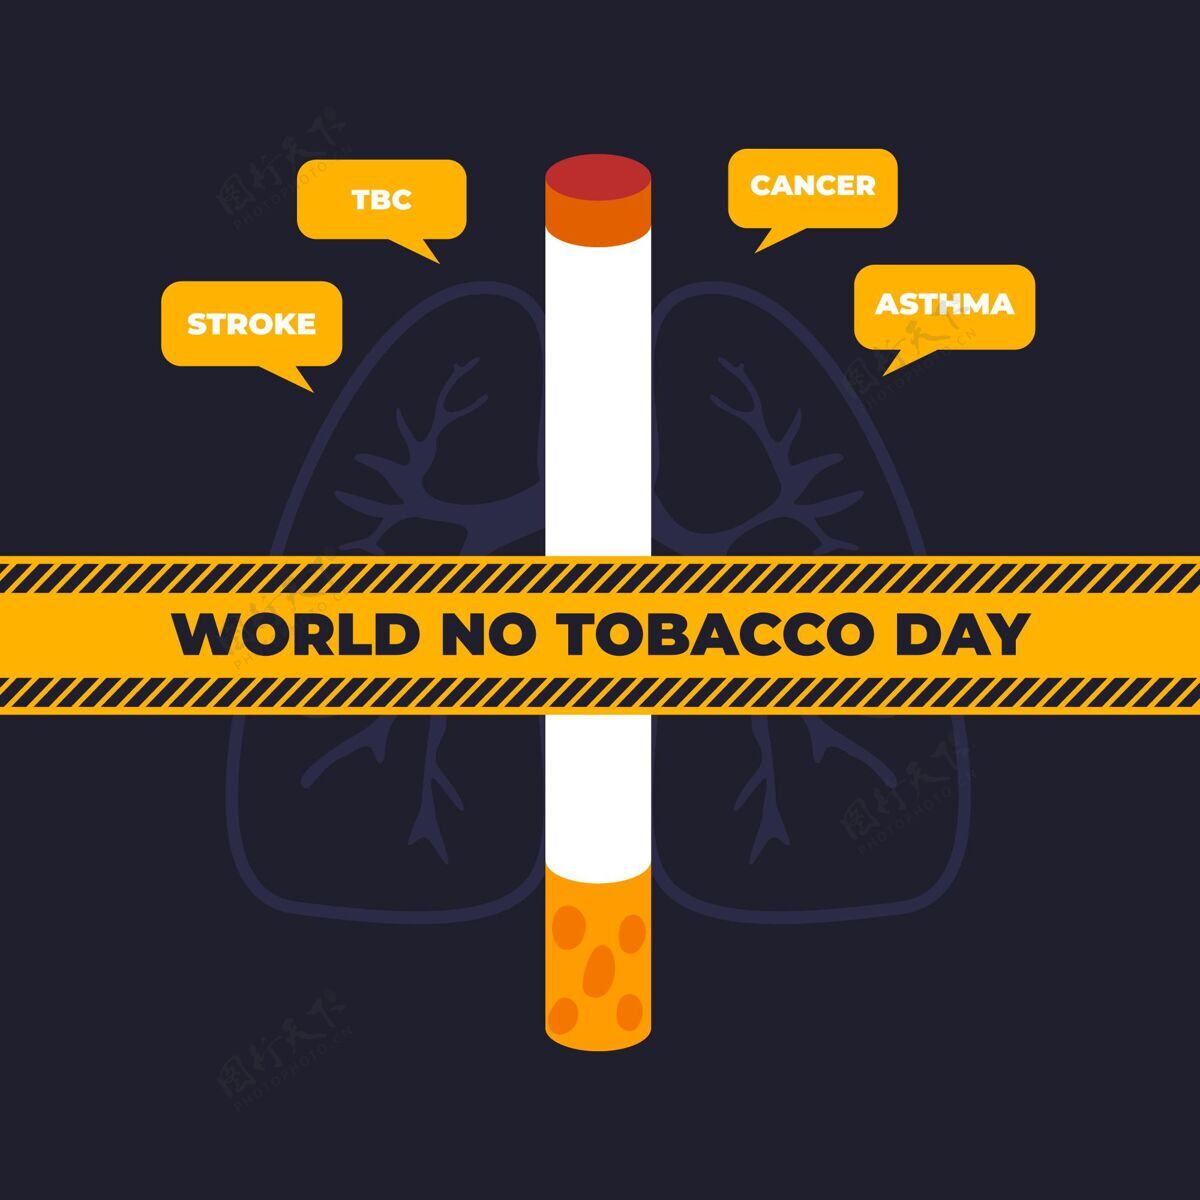 5月31日平面世界无烟日插画国际习惯不健康